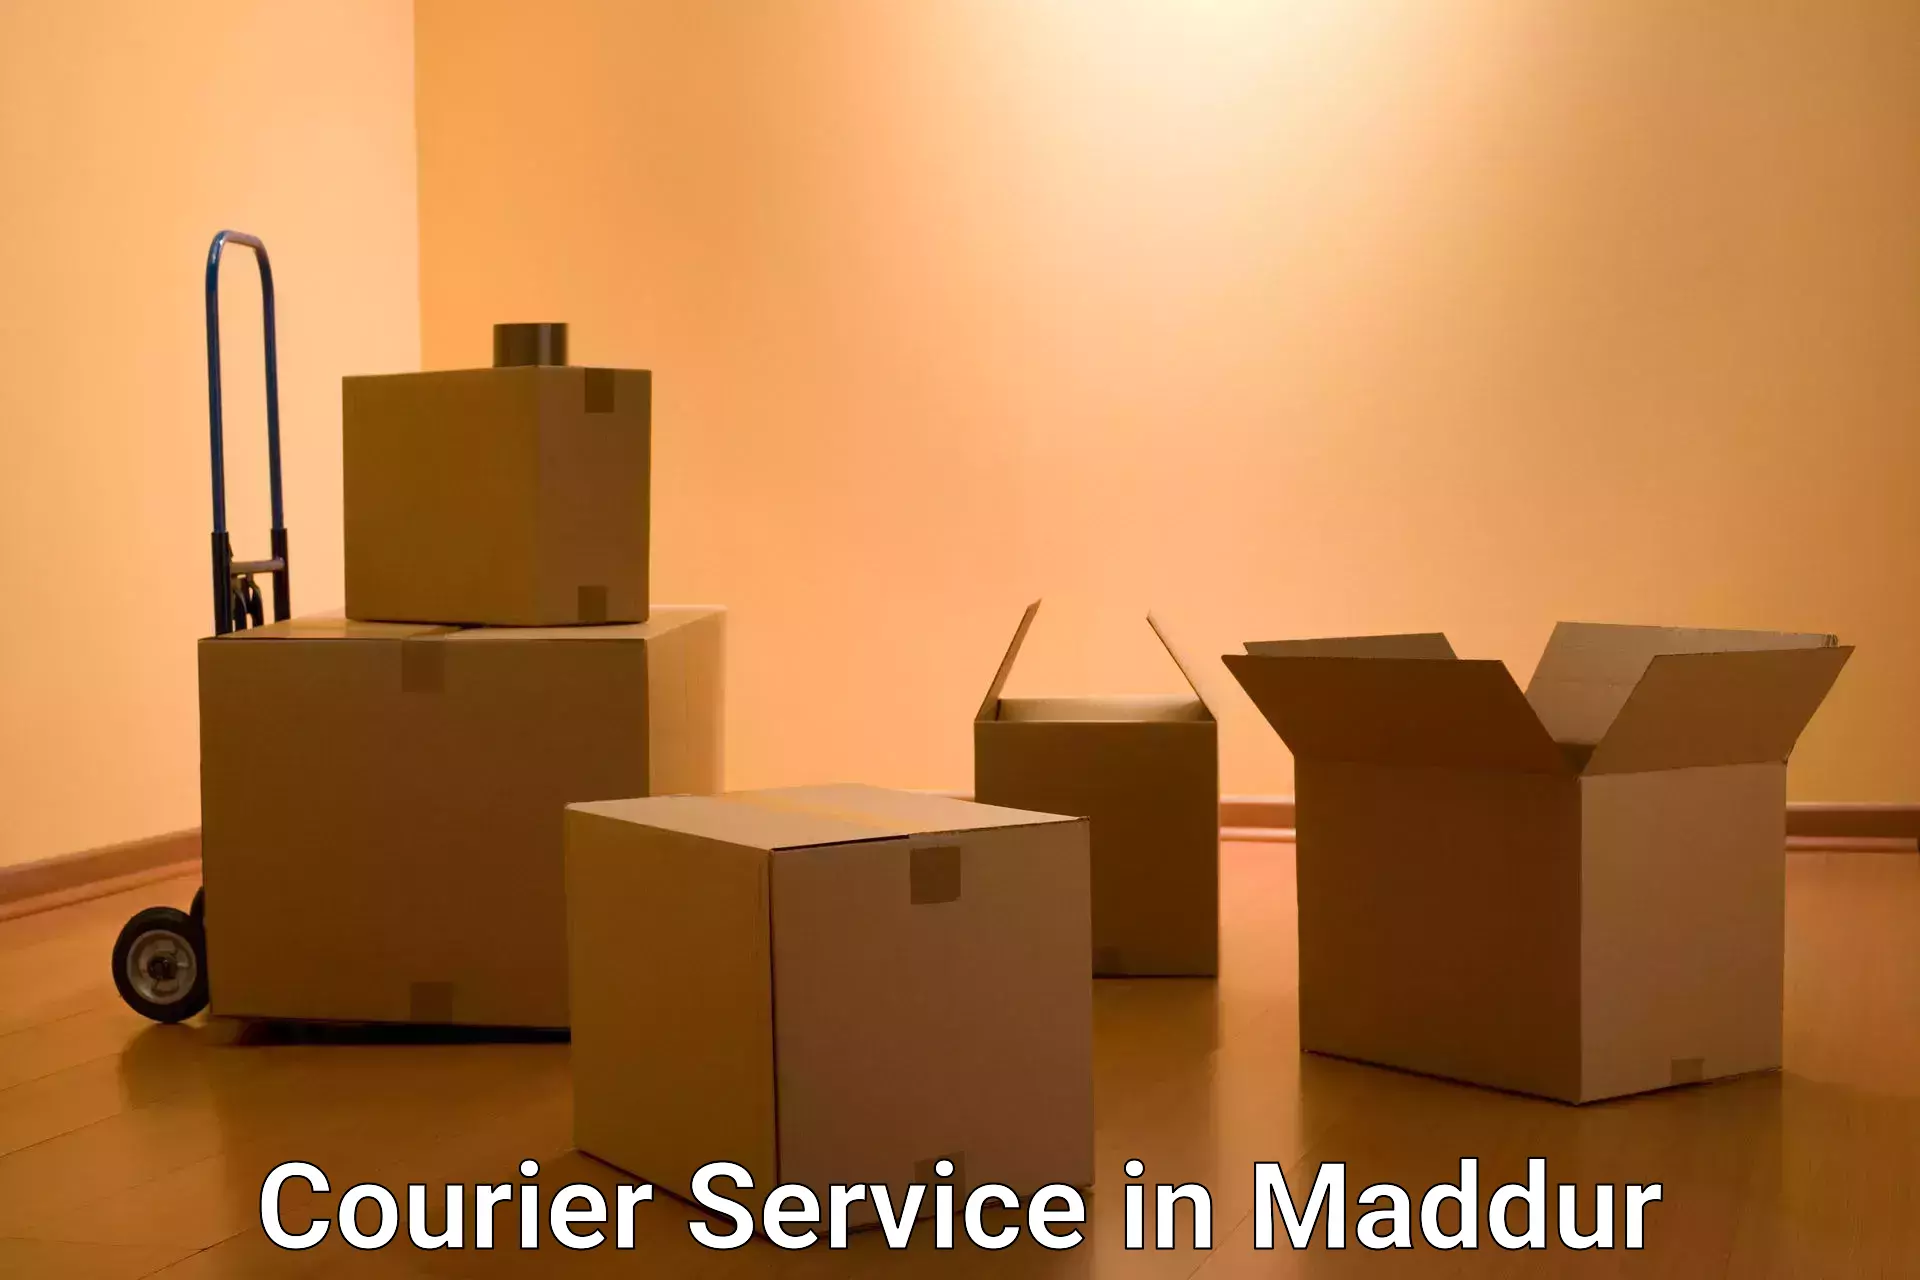 Efficient cargo services in Maddur